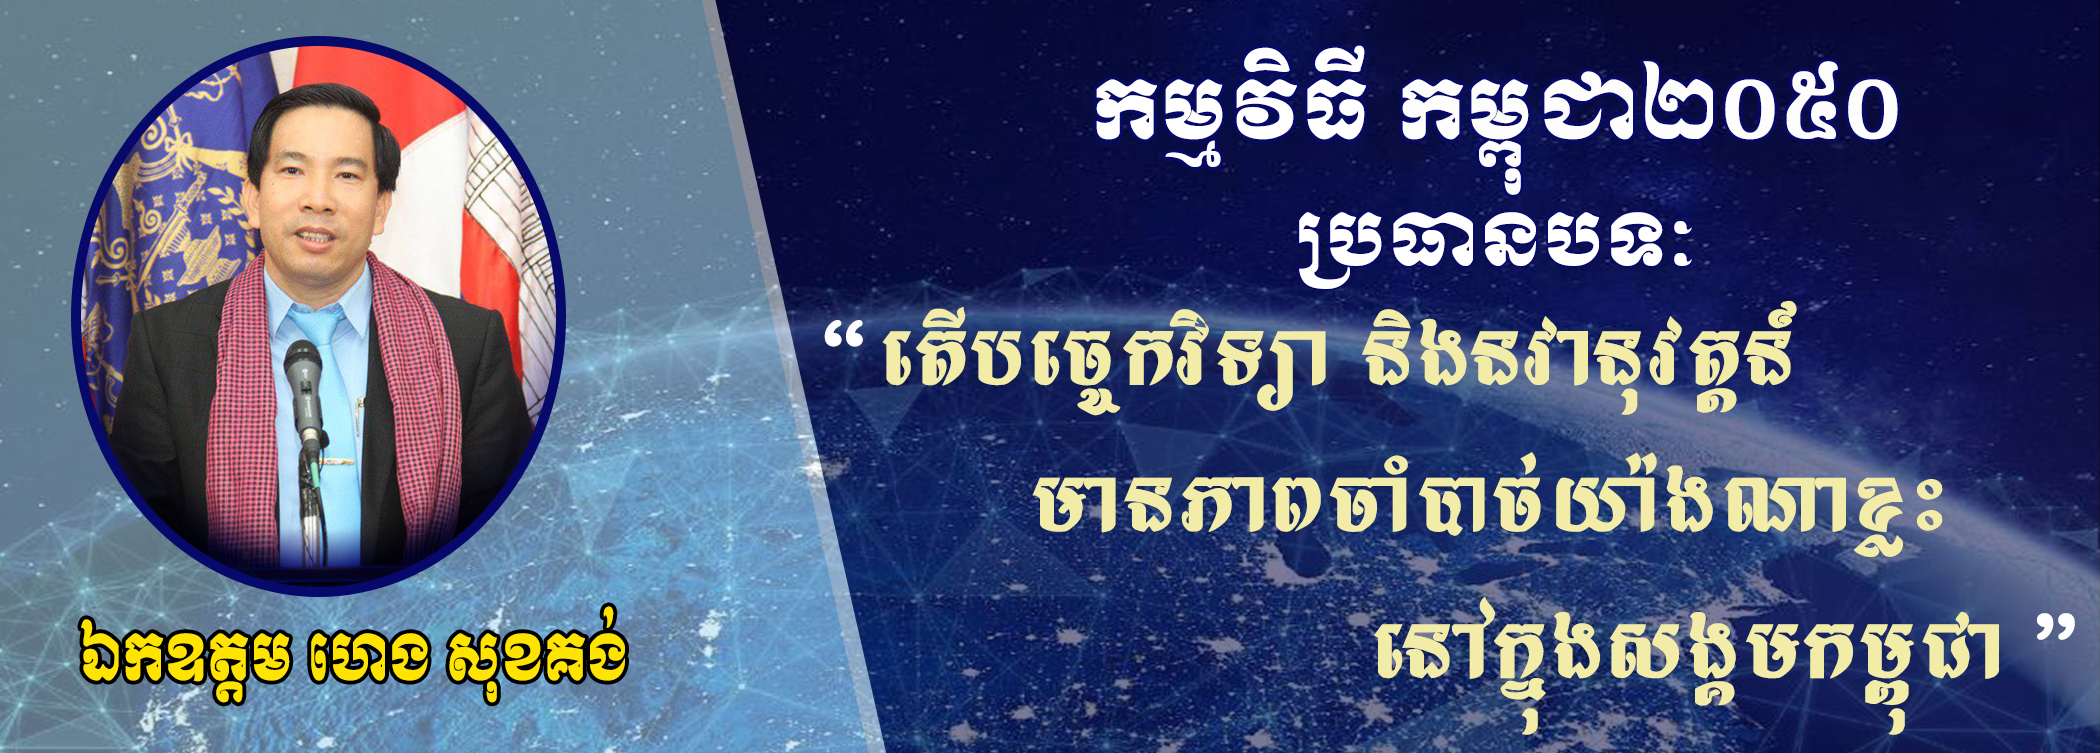 Cambodia2050 Ep24: វិស័យចំនួន 4 ដែលទទួលបានផលប្រយោជន៍ច្រើនជាងគេ ពីបច្ចេកវិទ្យា និងនវានុវត្តន៍